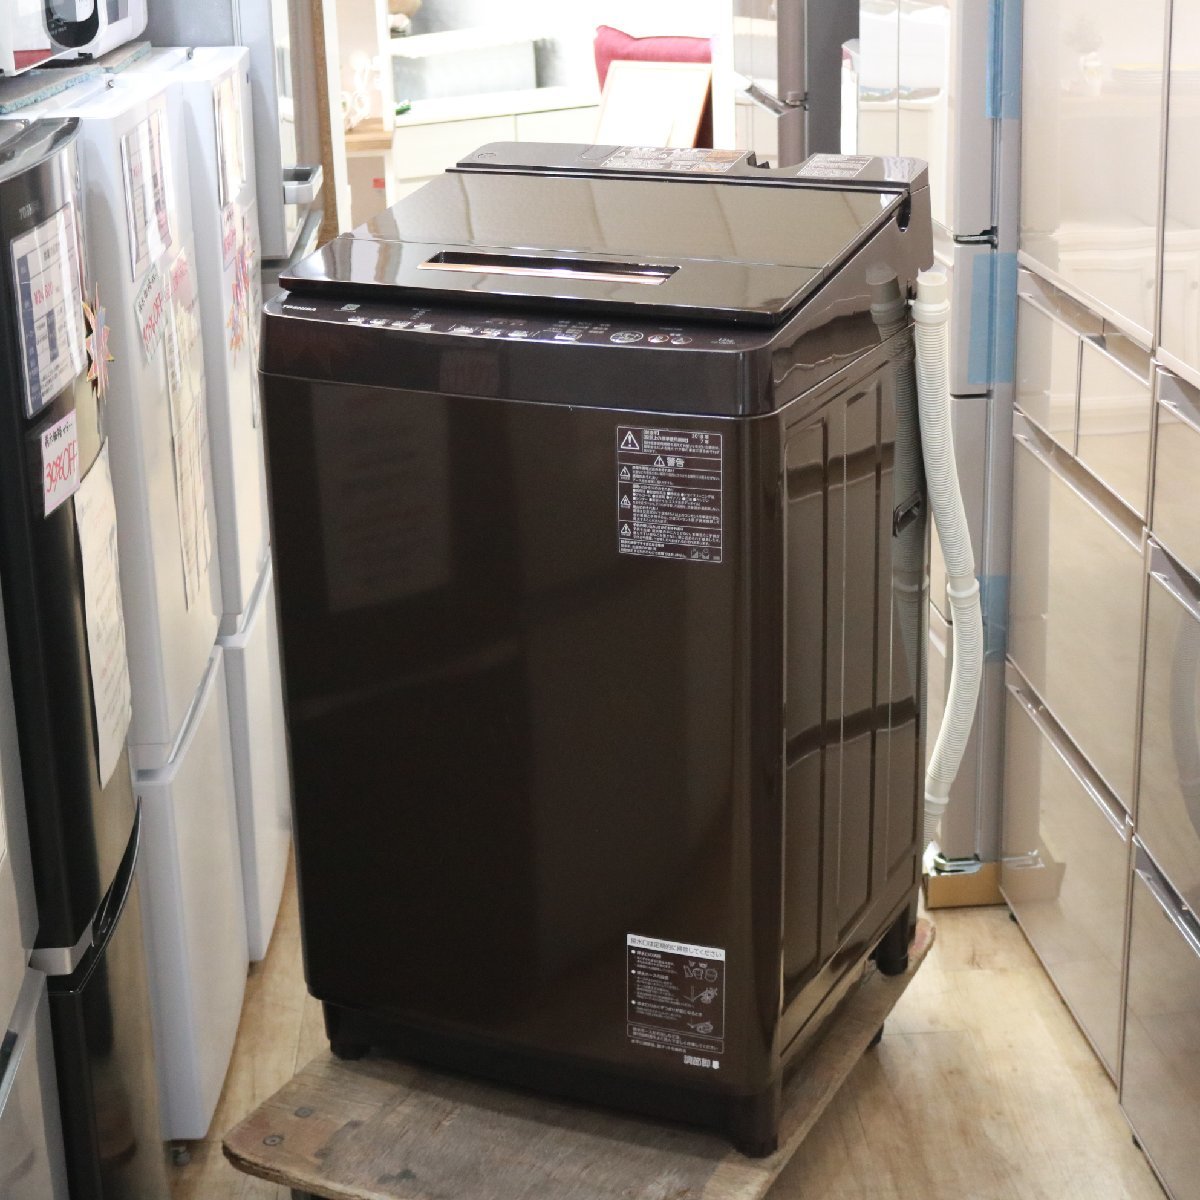 東京都世田谷区にて 東芝 全自動洗濯機 AW-12XD7 2018年製 を出張買取させて頂きました。